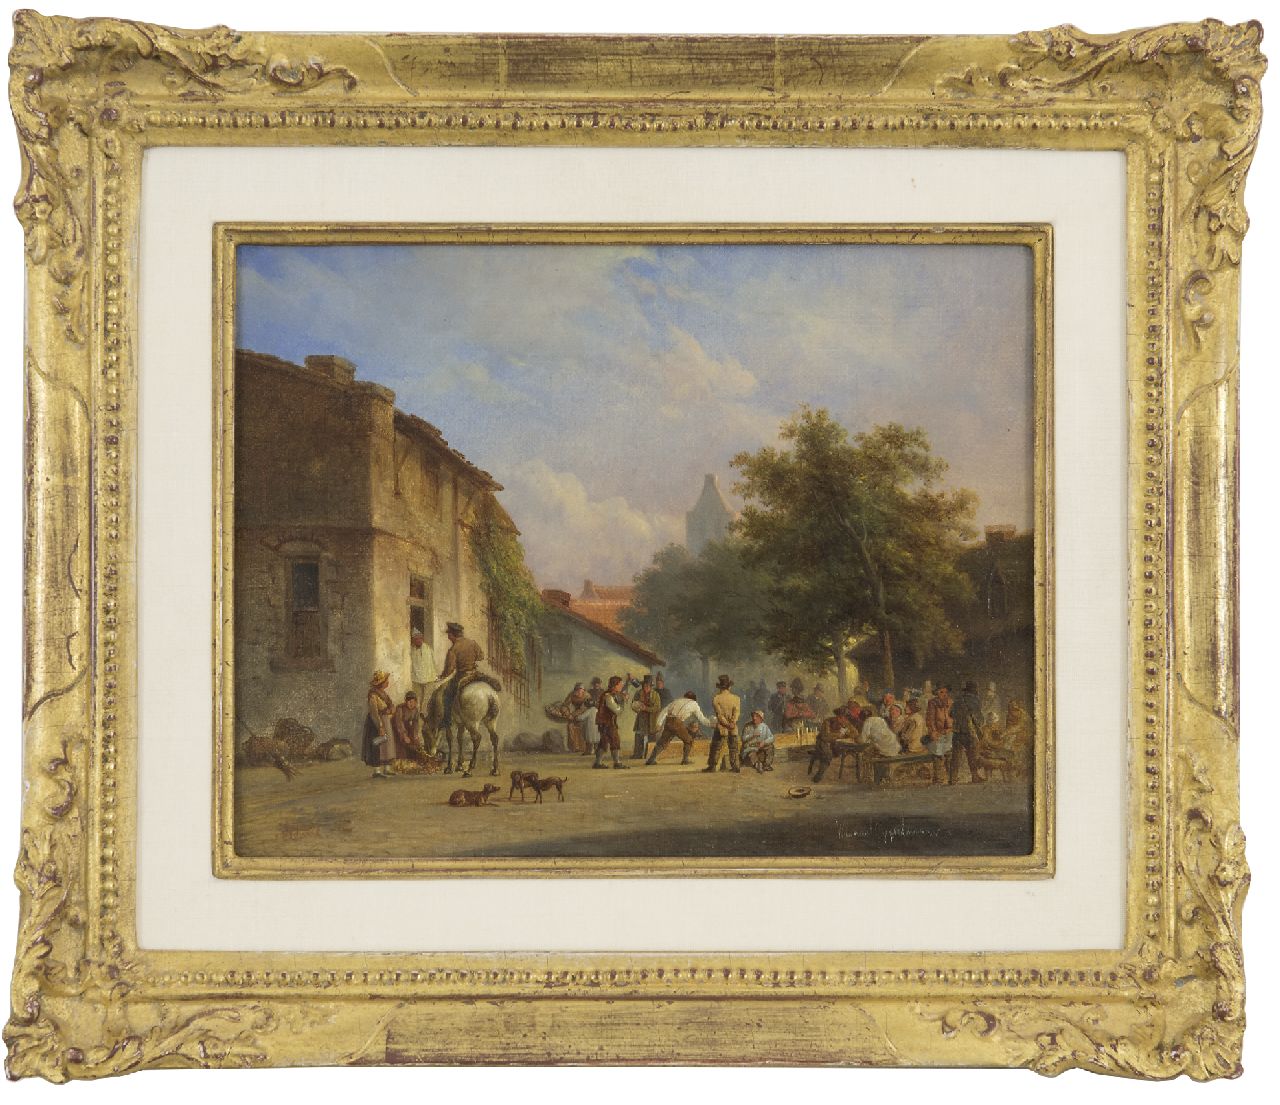 Gijselman W.  | Warner Gijselman | Schilderijen te koop aangeboden | Kegelen op het dorpsplein, olieverf op doek 17,9 x 23,0 cm, gesigneerd rechtsonder